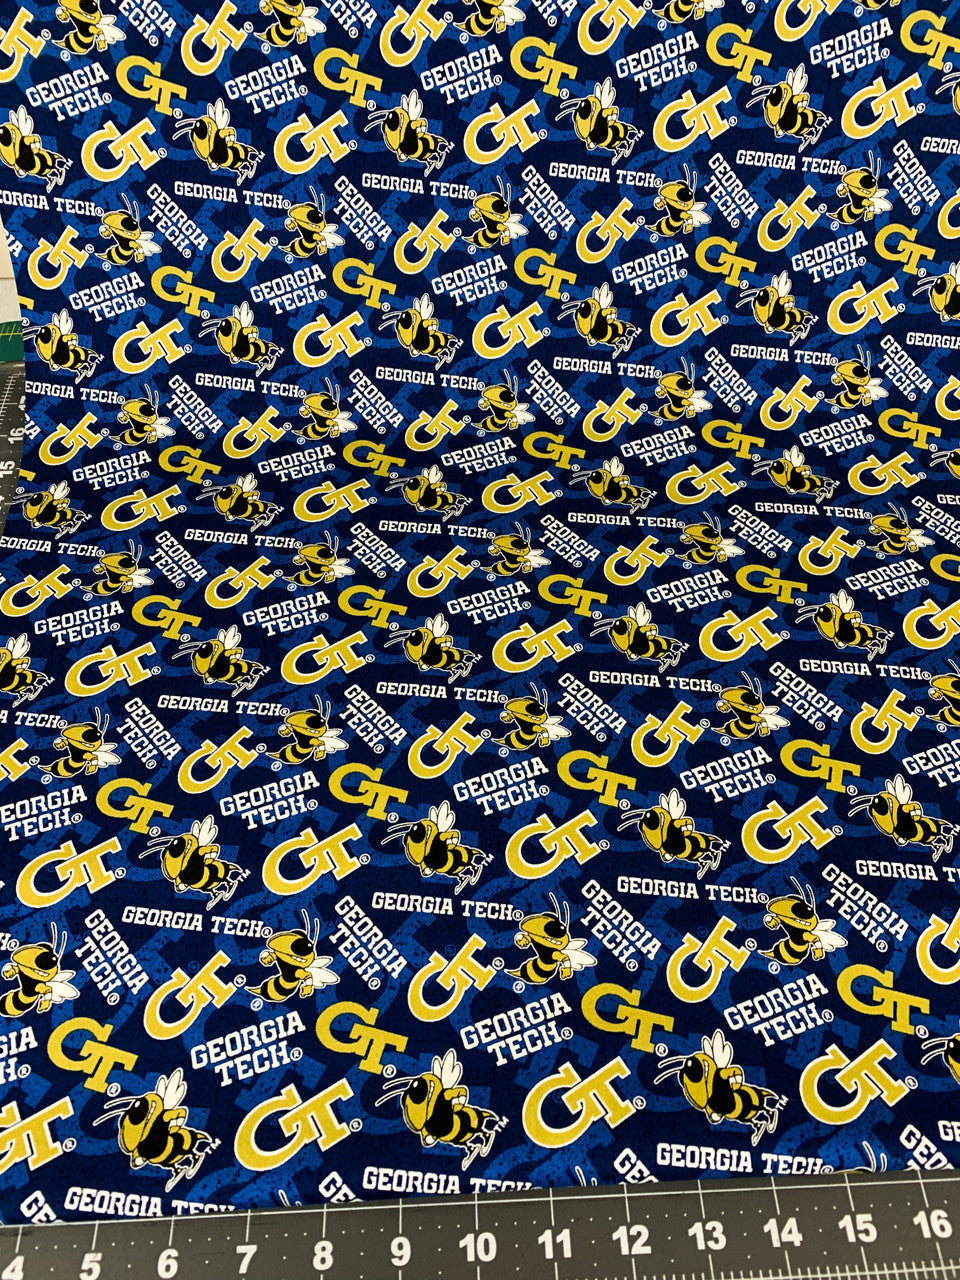 Georgia Tech Yellow Jackets fabric GT1178 Georgia Tech cotton fabric